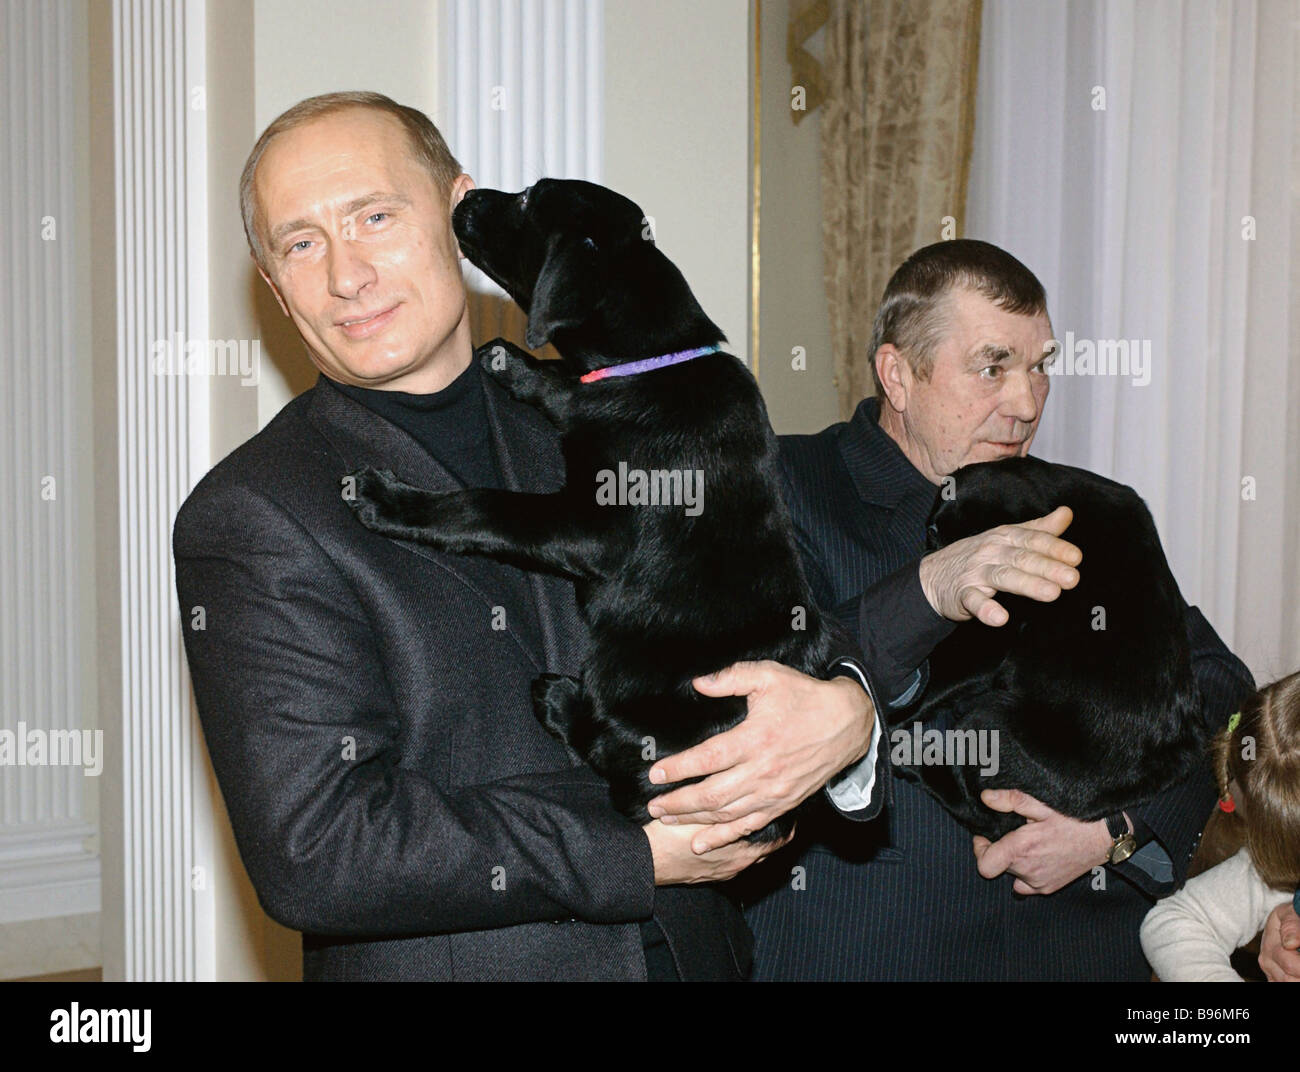 el-presidente-ruso-vladimir-putin-presentando-los-cachorros-nacidos-a-su-perro-labrador-connie-al-pensionista-de-la-region-de-rostov-alexei-b96mf6.jpg